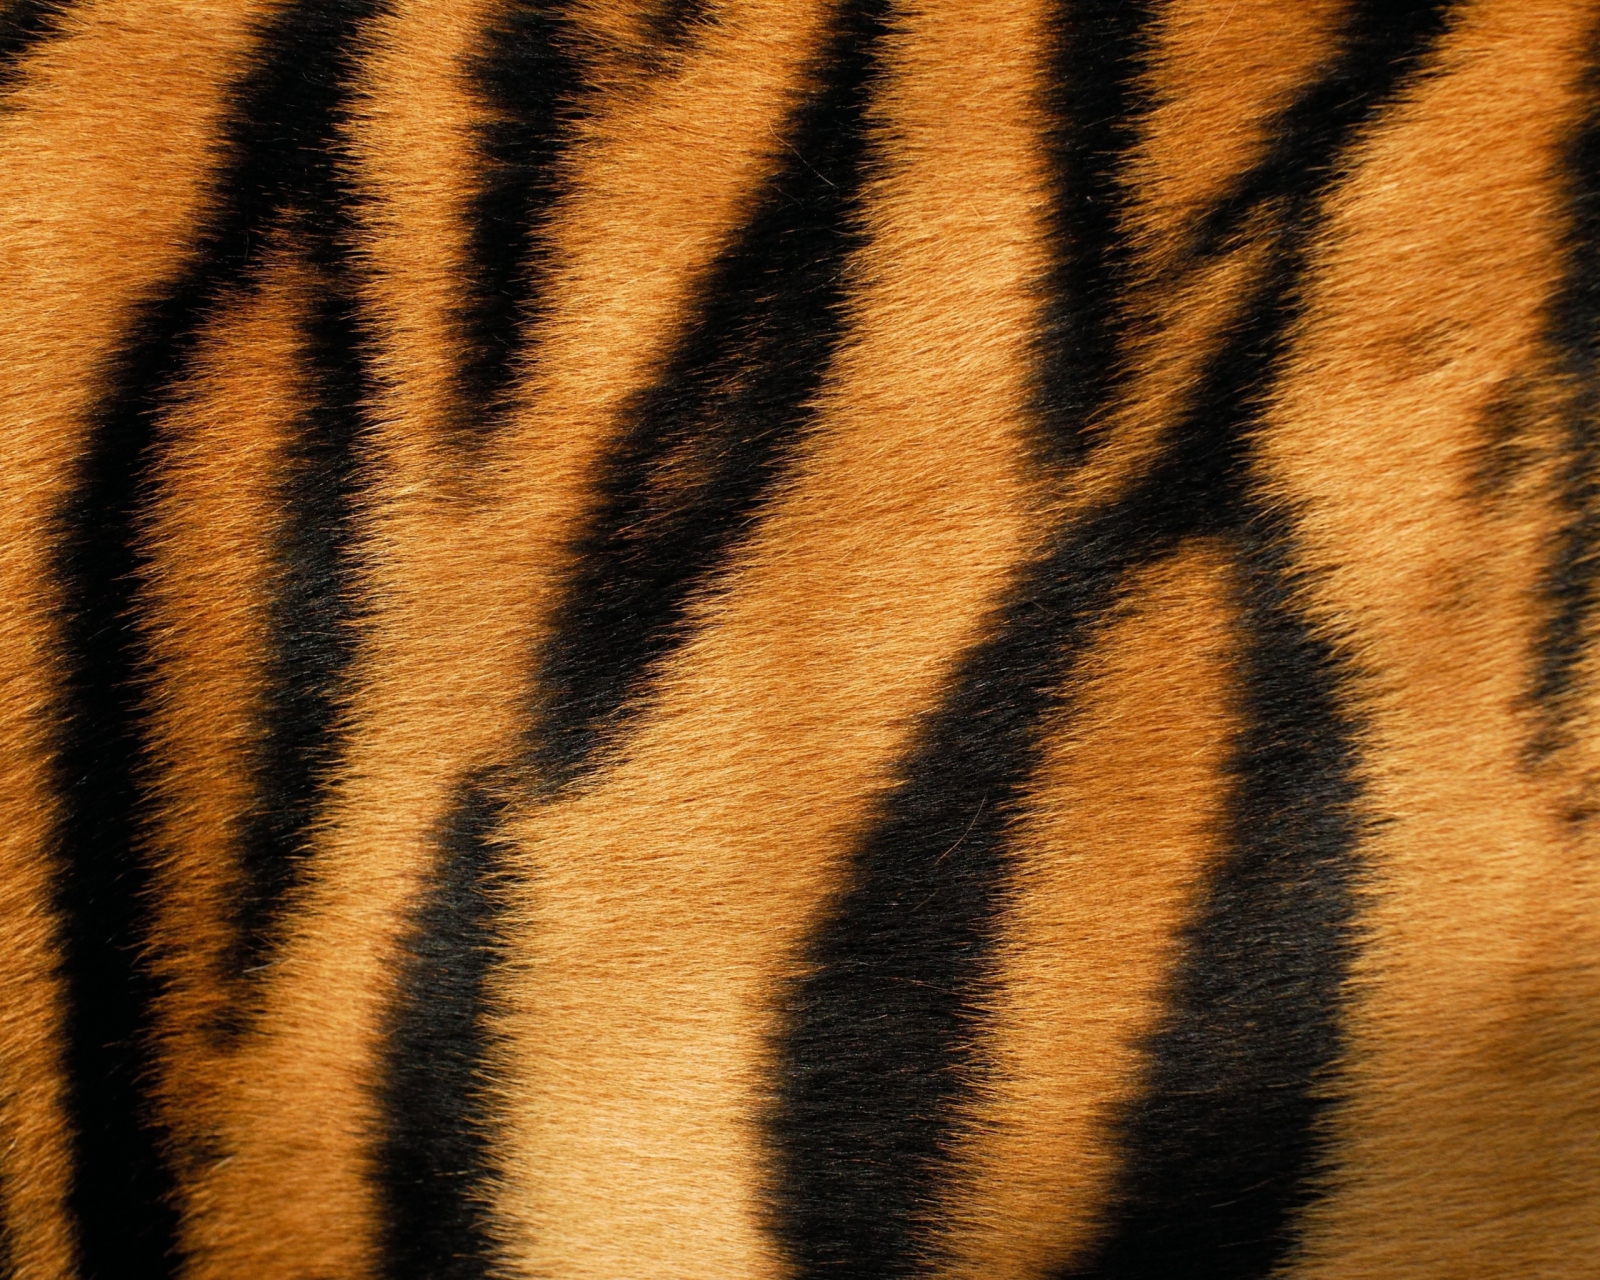 Tiger wallpaper 1600x1280